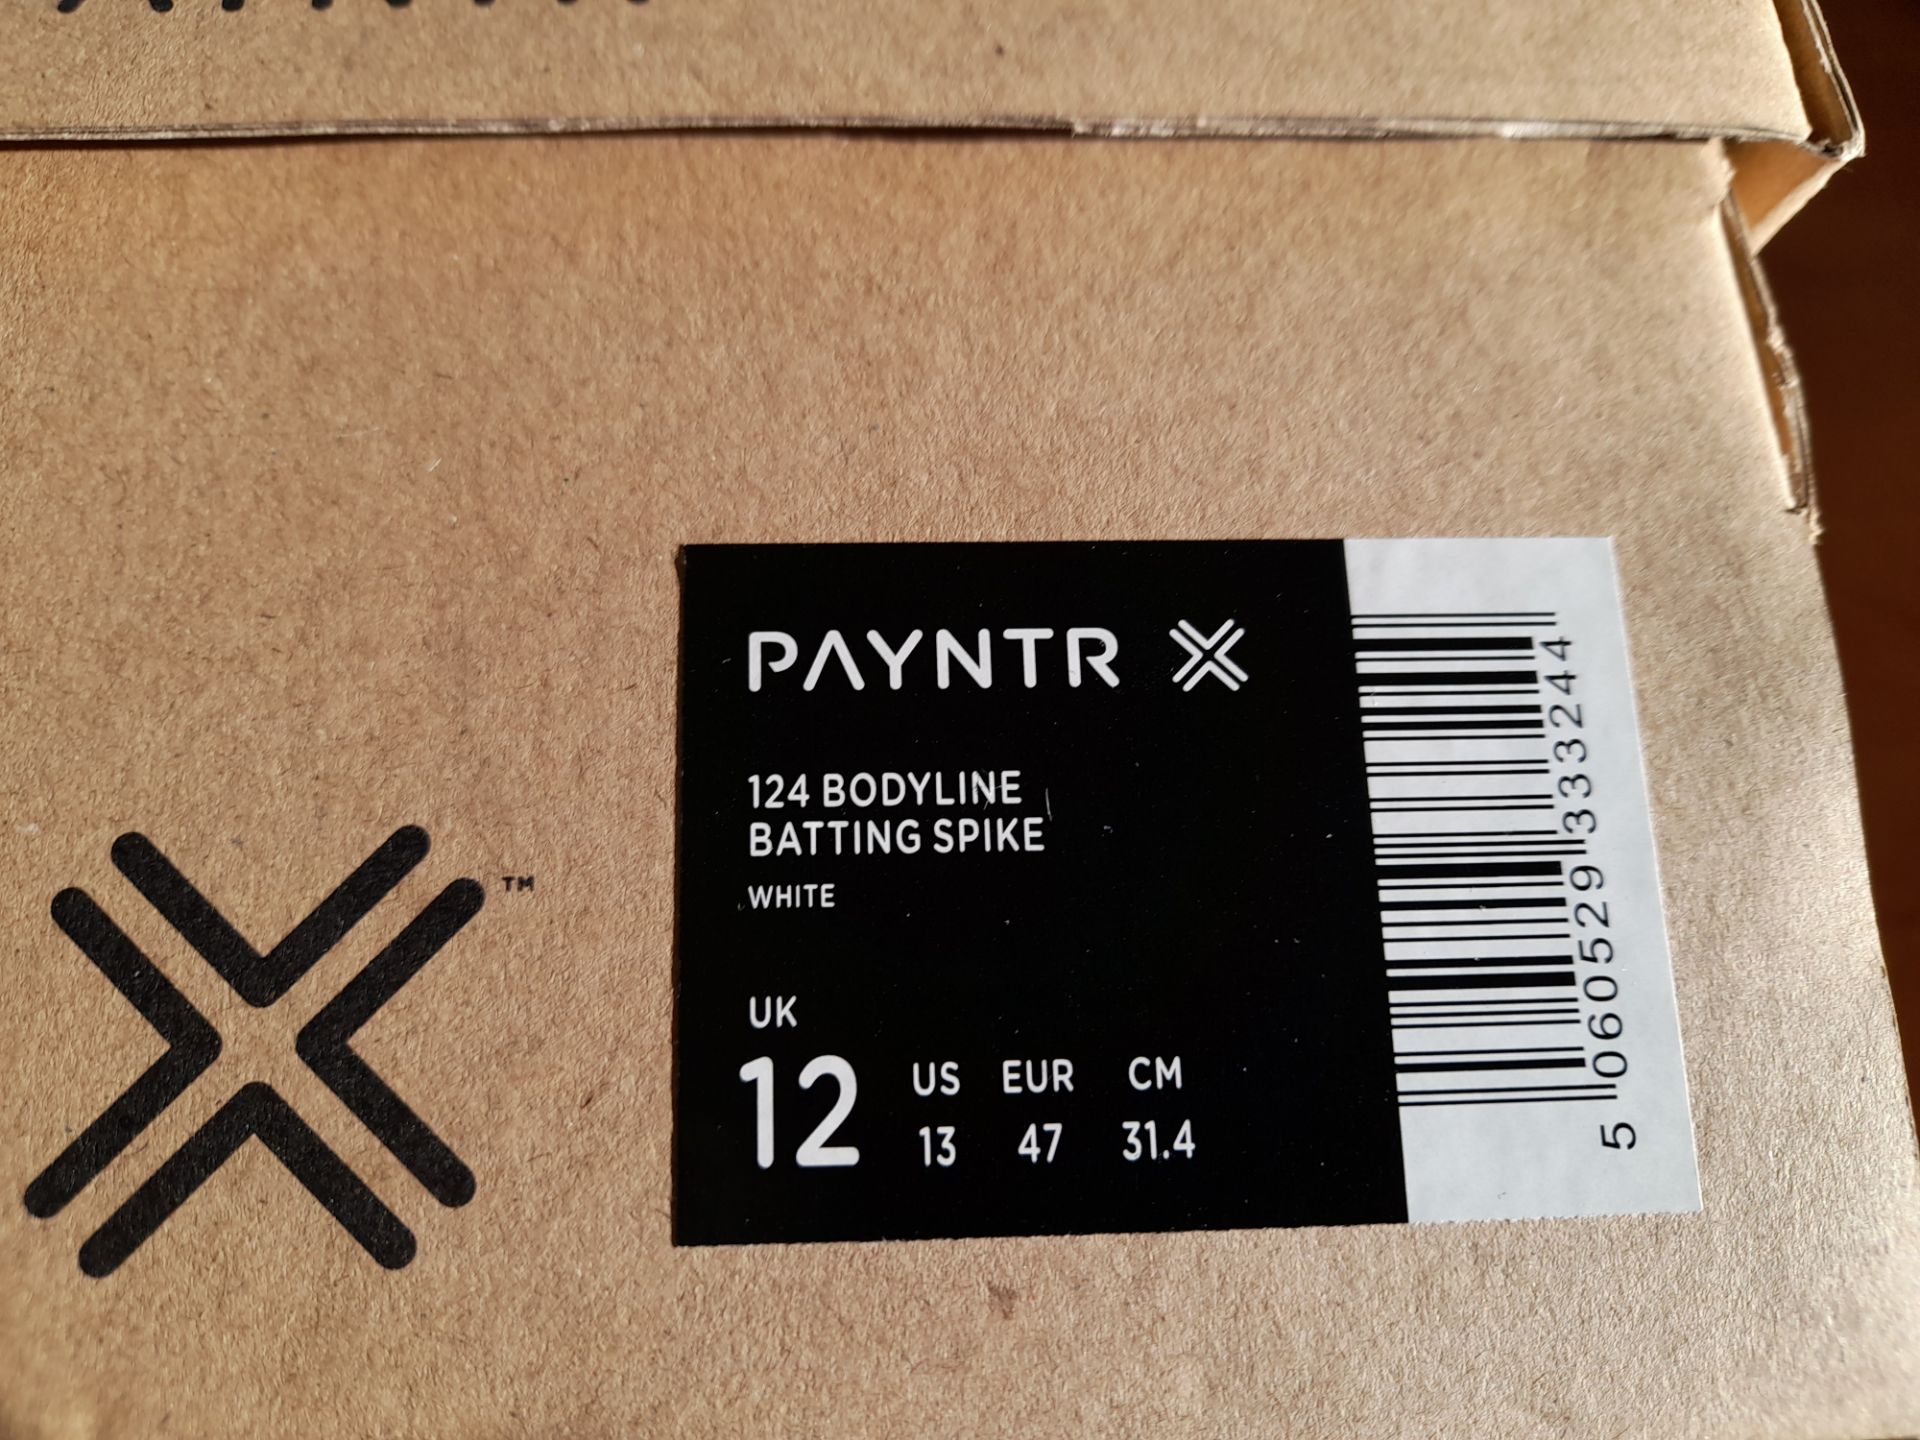 Payntr 124 Bodyline Batting Spike Cricket Shoe Size 12 UK - Image 2 of 5